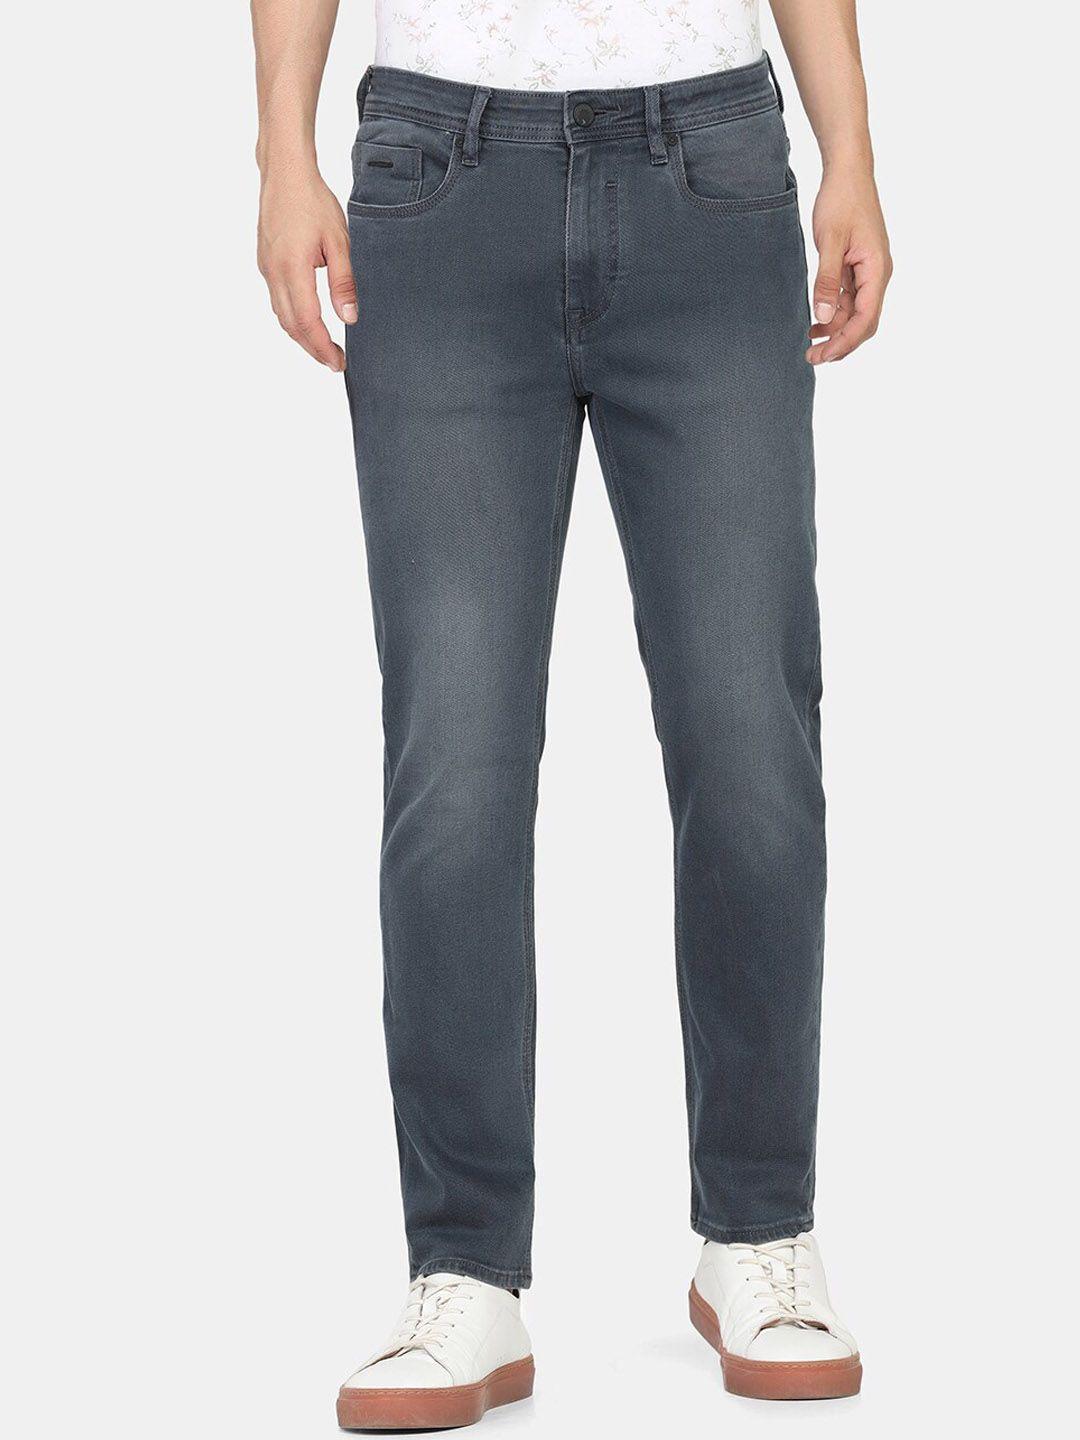 blackberrys men grey cotton skinny fit low-rise low distress light fade jeans